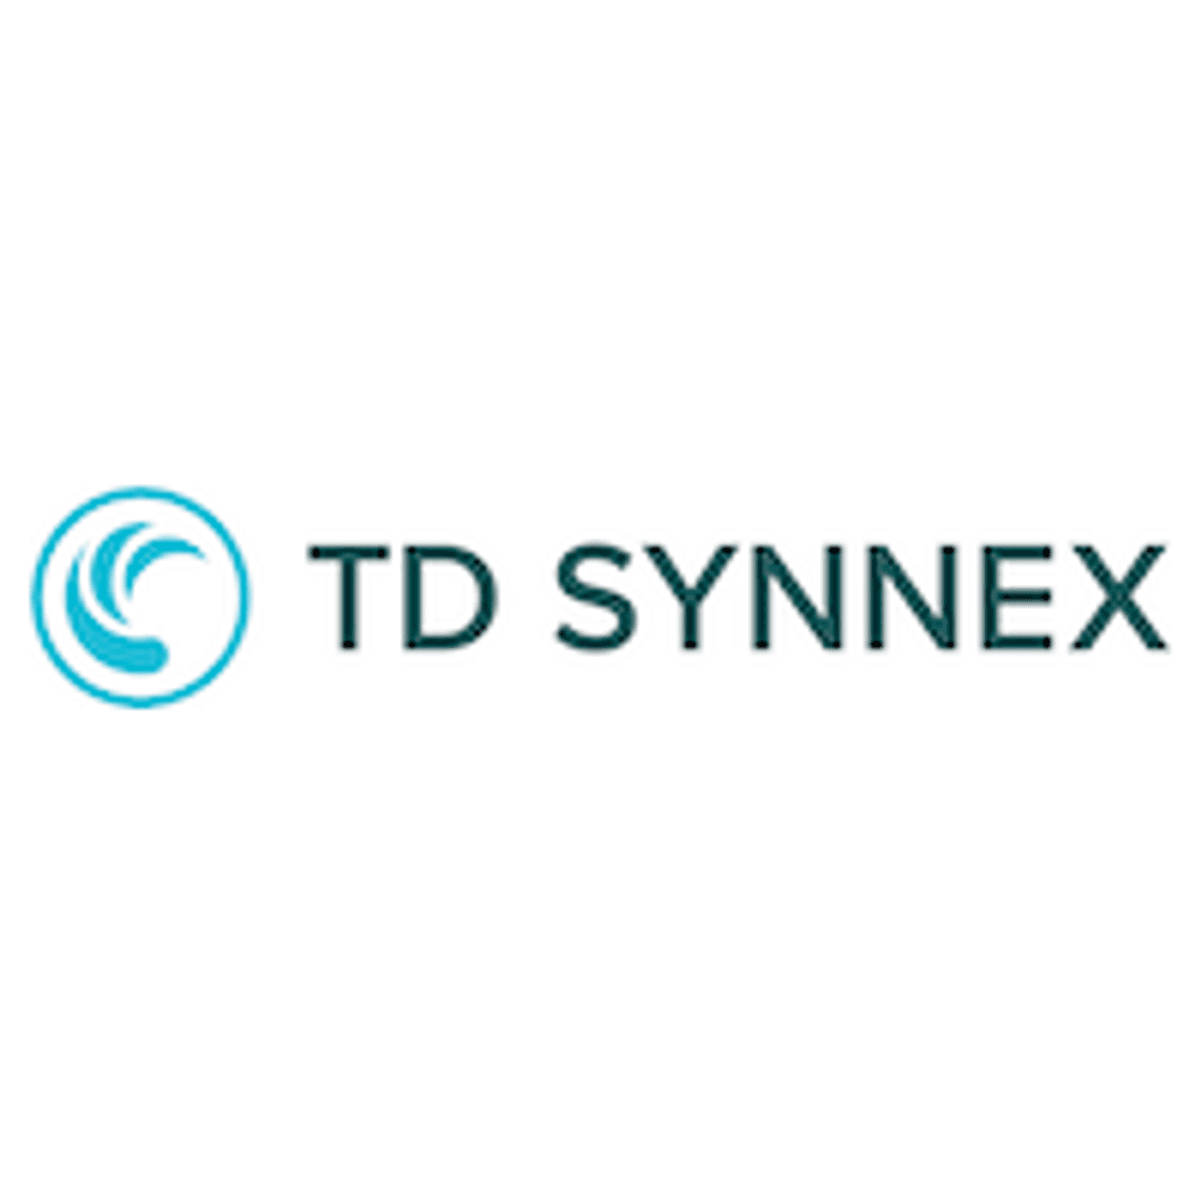 TD Synnex is Distributeur van het Jaar in CONTEXT ChannelWatch 2022 awards image